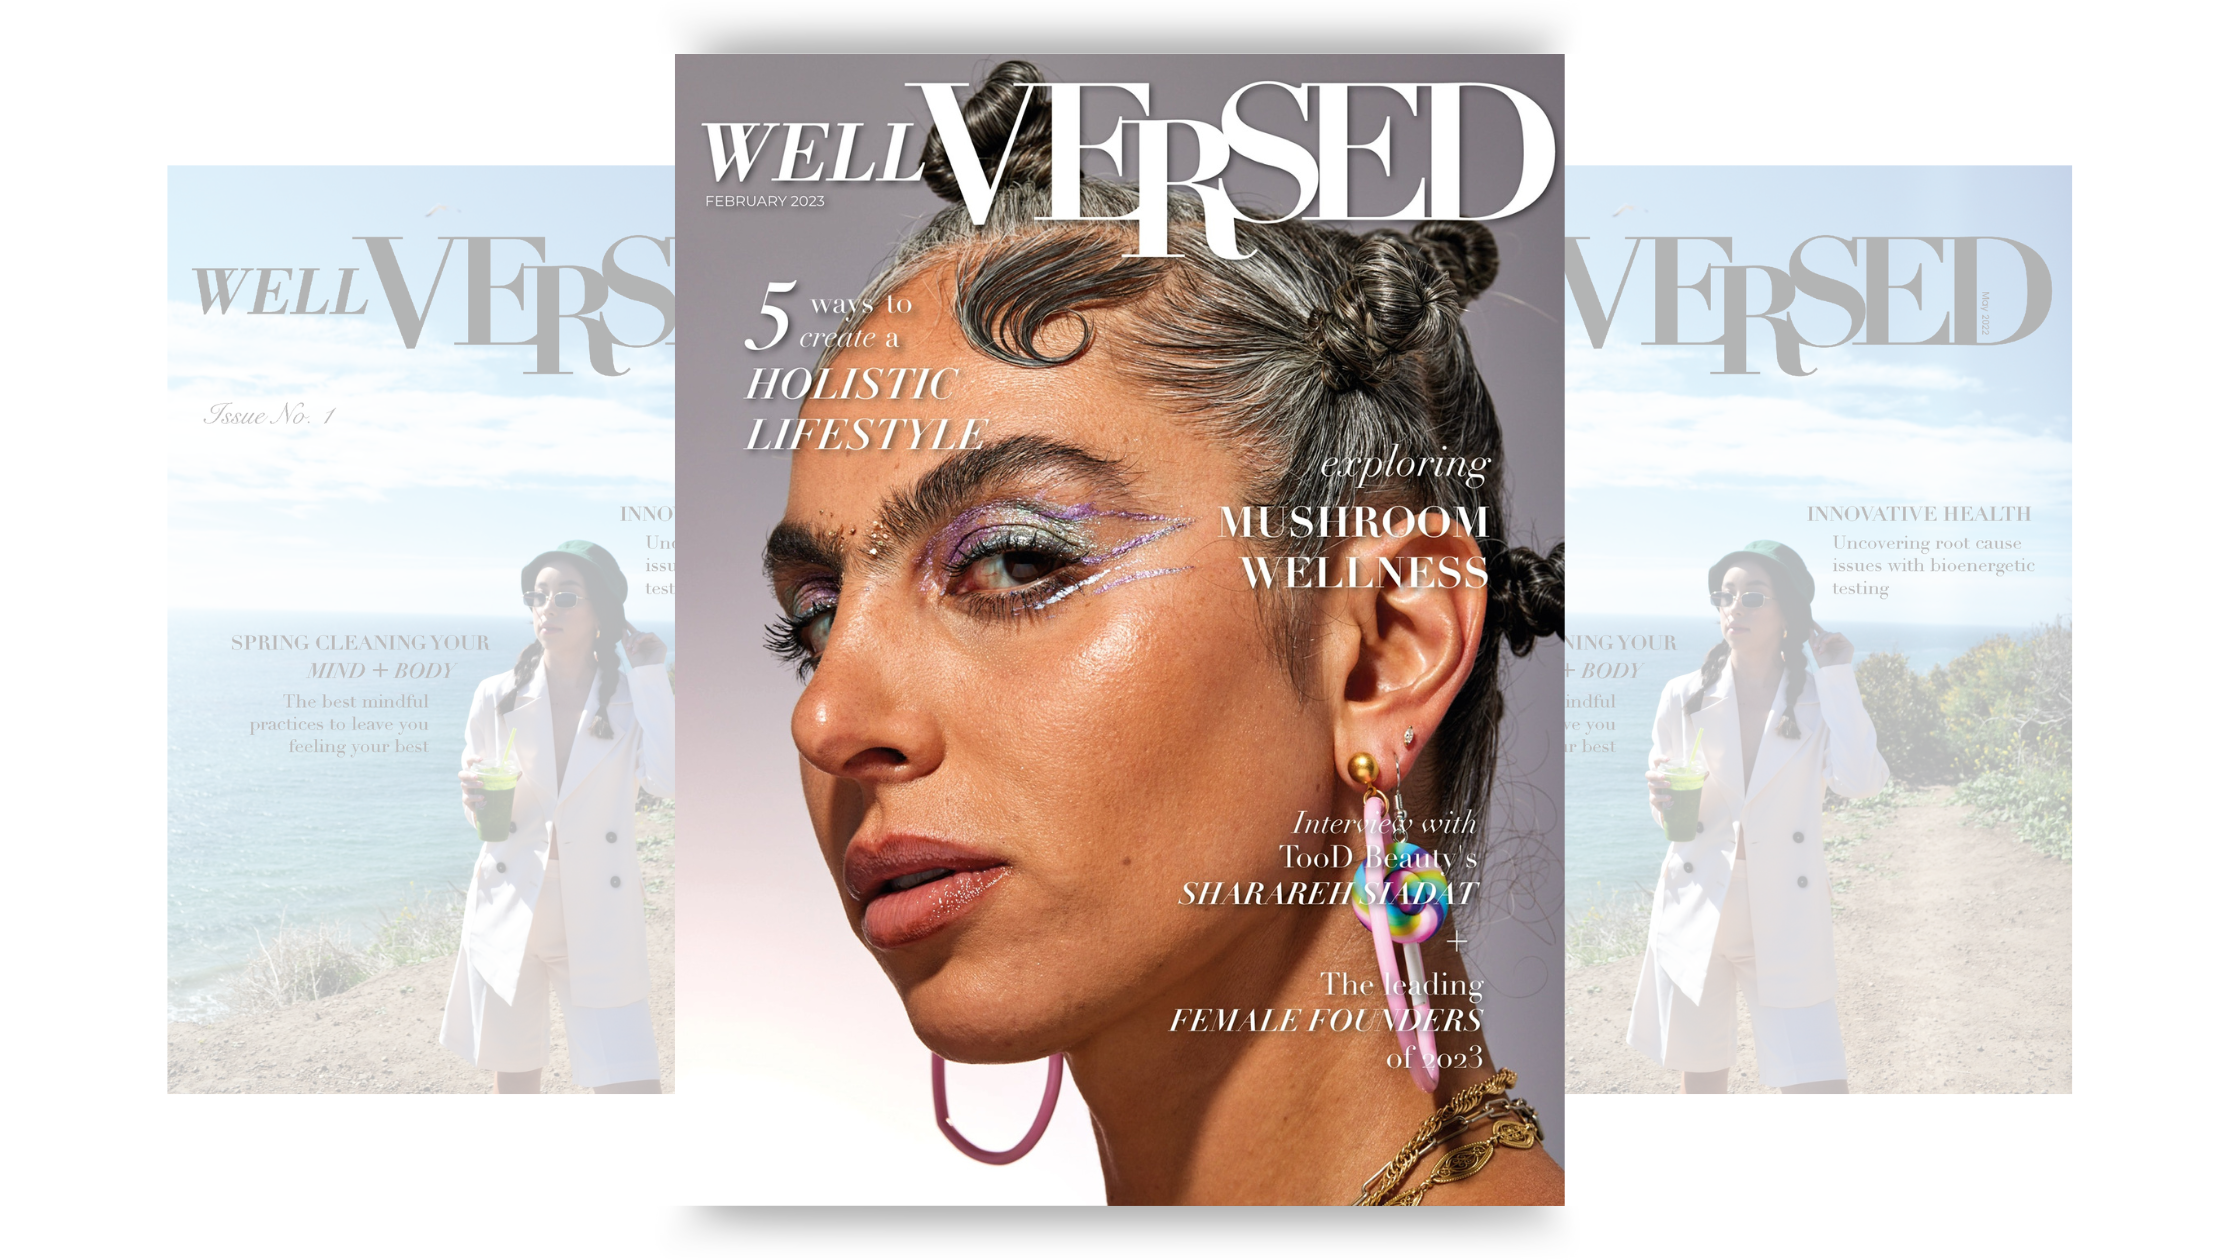 Well Versed magazine featuring Shari Siadat